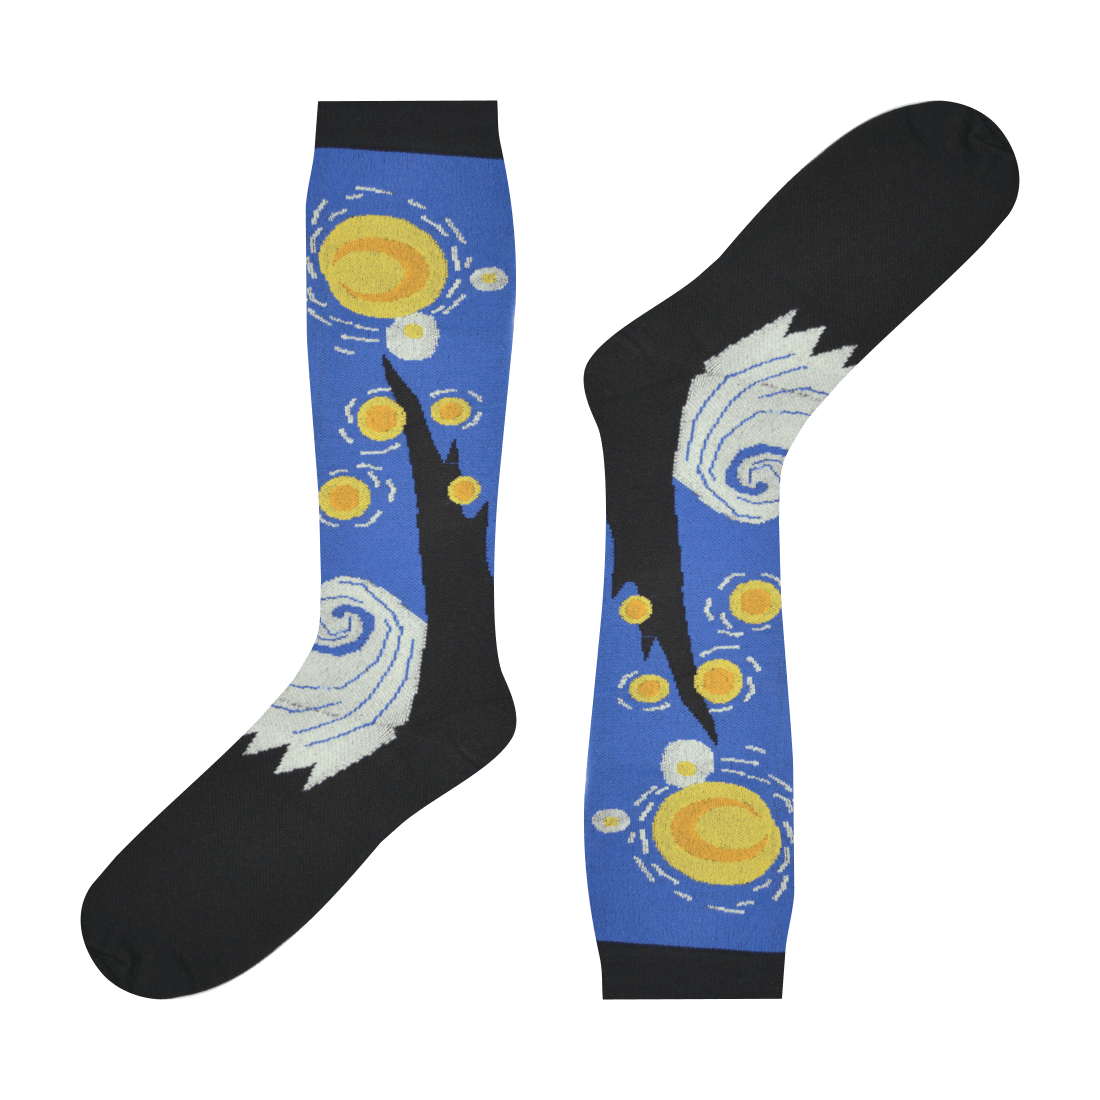 Medias de compresión Locas calcetines divertidos de diseño de noche estrellada Freaky Socks